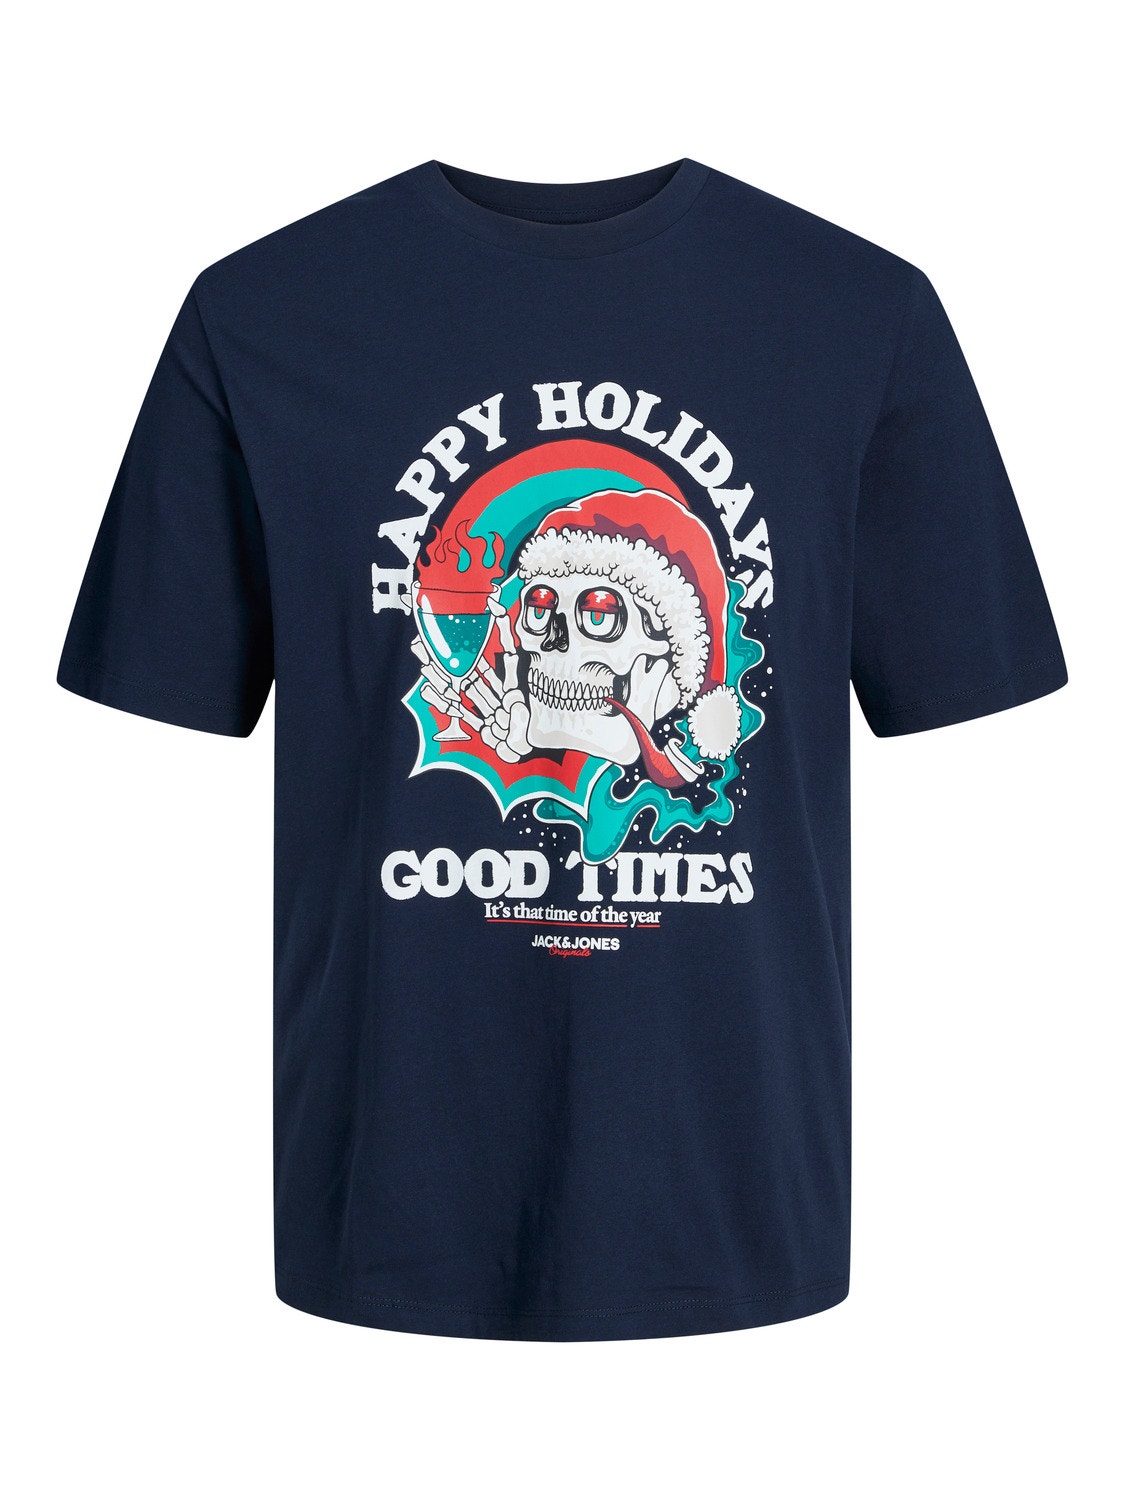 Jack & Jones X-mas T-shirt För pojkar -Navy Blazer - 12247645